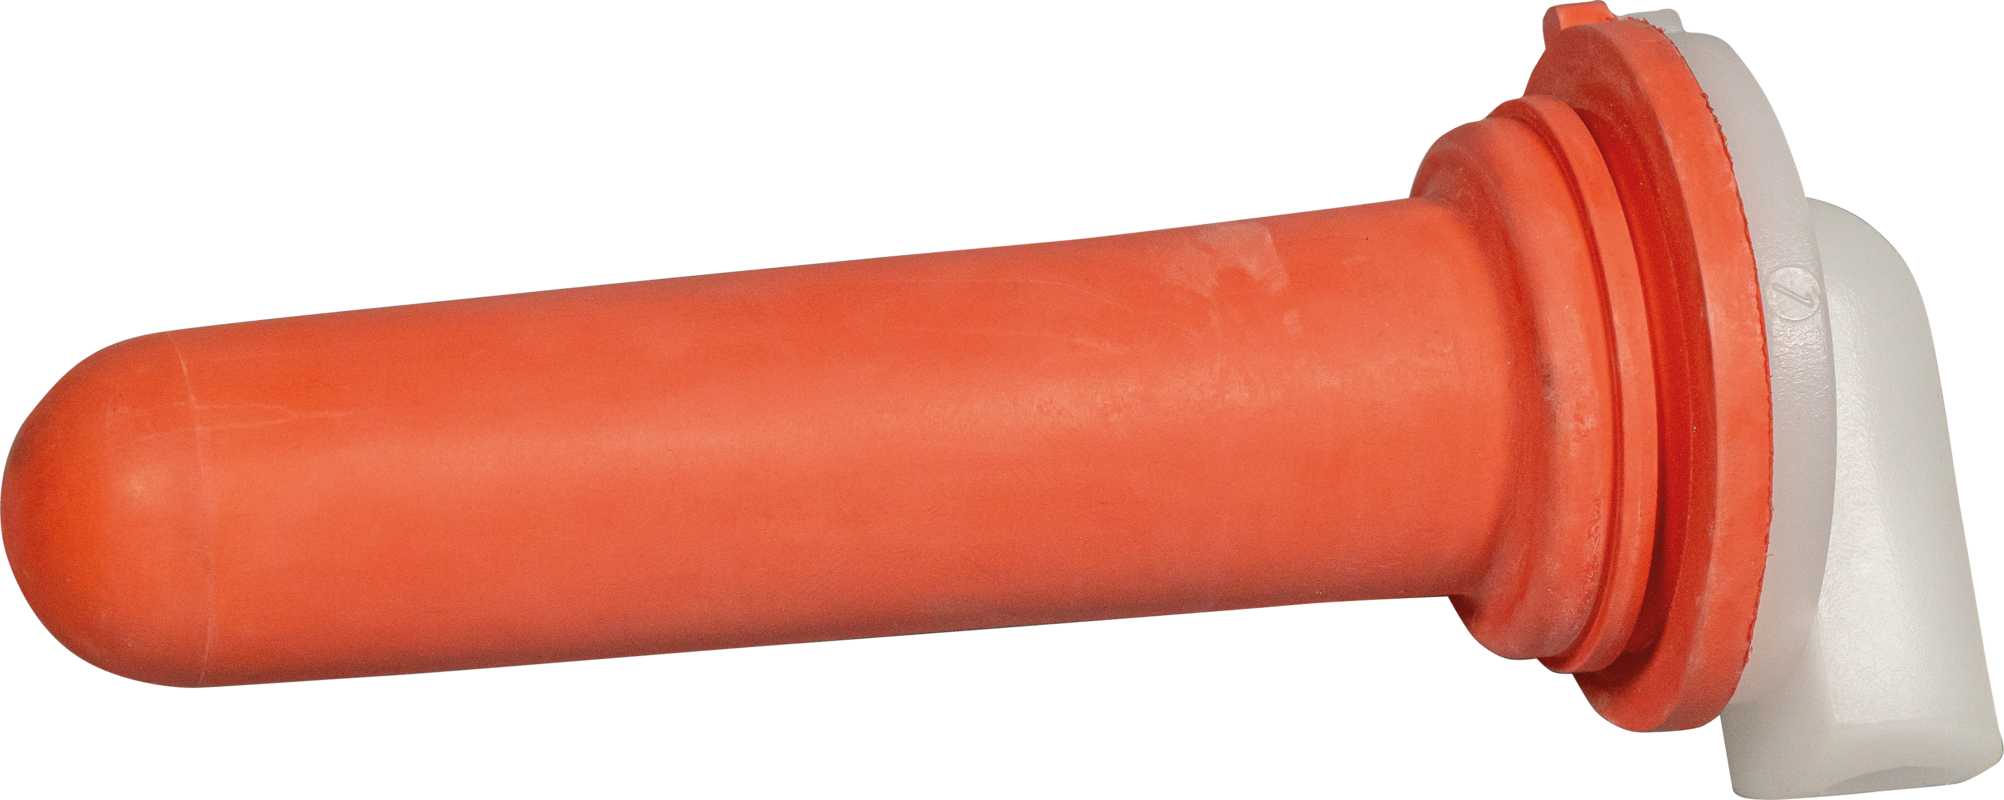 Sauger, mittel (rot) mit 1-Click-Ventil für Nuckel-Tränkeeimer und Kälber-Tränkeflasche Profi